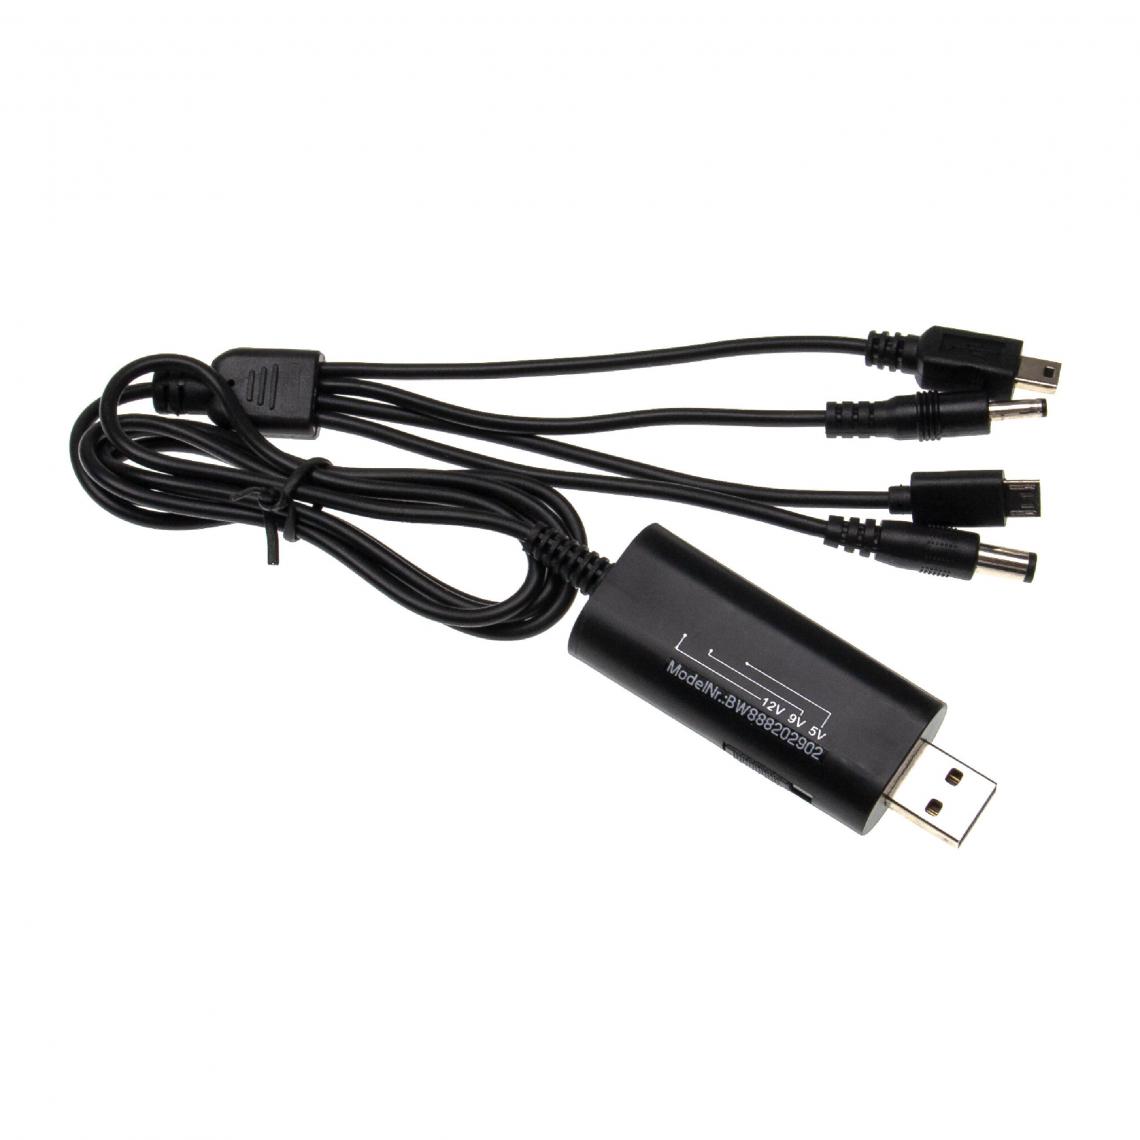 Vhbw - vhbw Câble chargeur USB multiple pour divers appareils tels que téléphones, portables, smartphones - Adaptateur universel 4-en-1, 120 cm, noir - Autre appareil de mesure